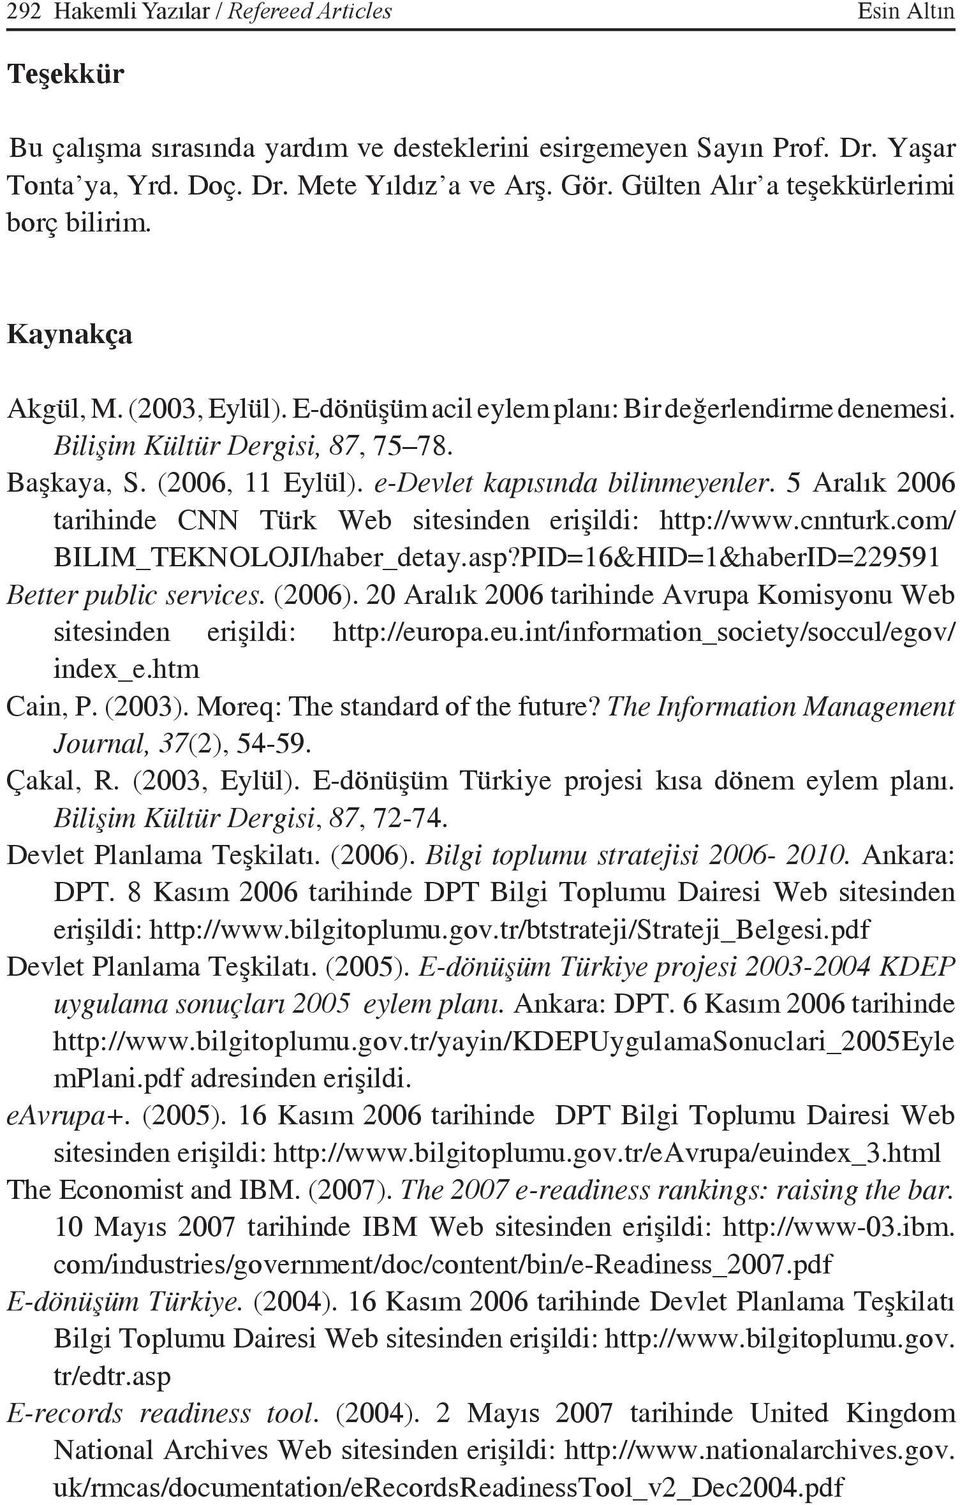 e-devlet kapısında bilinmeyenler. 5 Aralık 2006 tarihinde CNN Türk Web sitesinden erişildi: http://www.cnnturk.com/ BILIM_TEKNOLOJI/haber_detay.asp?PID=16&HID=1&haberID=229591 Better public services.